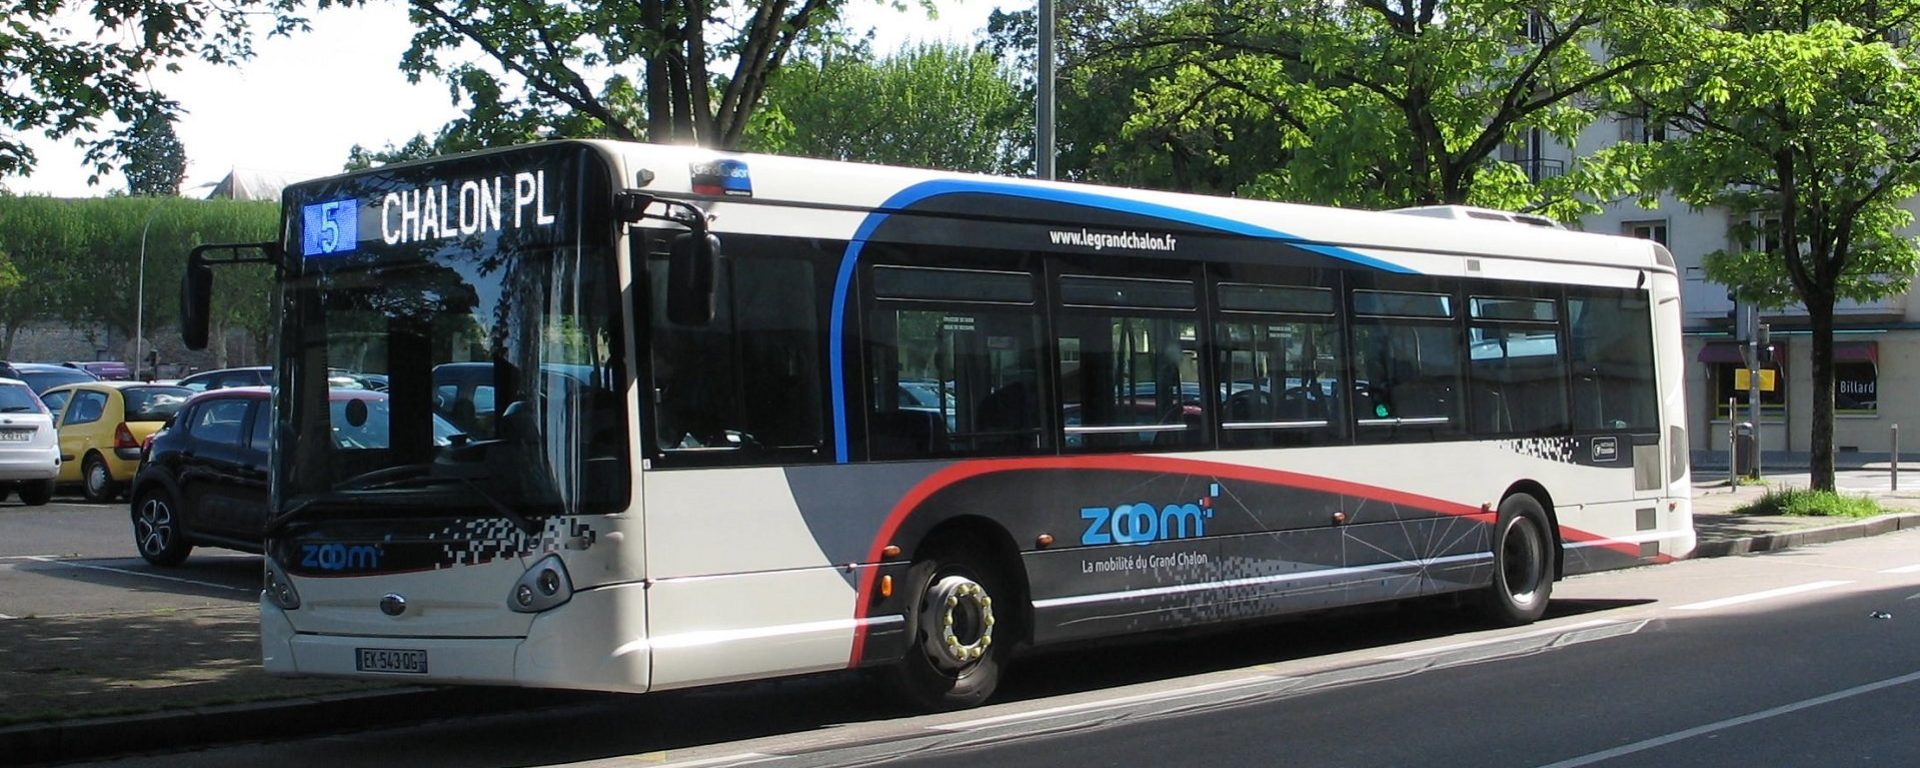 Transdev réseau urbain transport public Zoom Chalon-sur-Saône mobilité déplacement bus